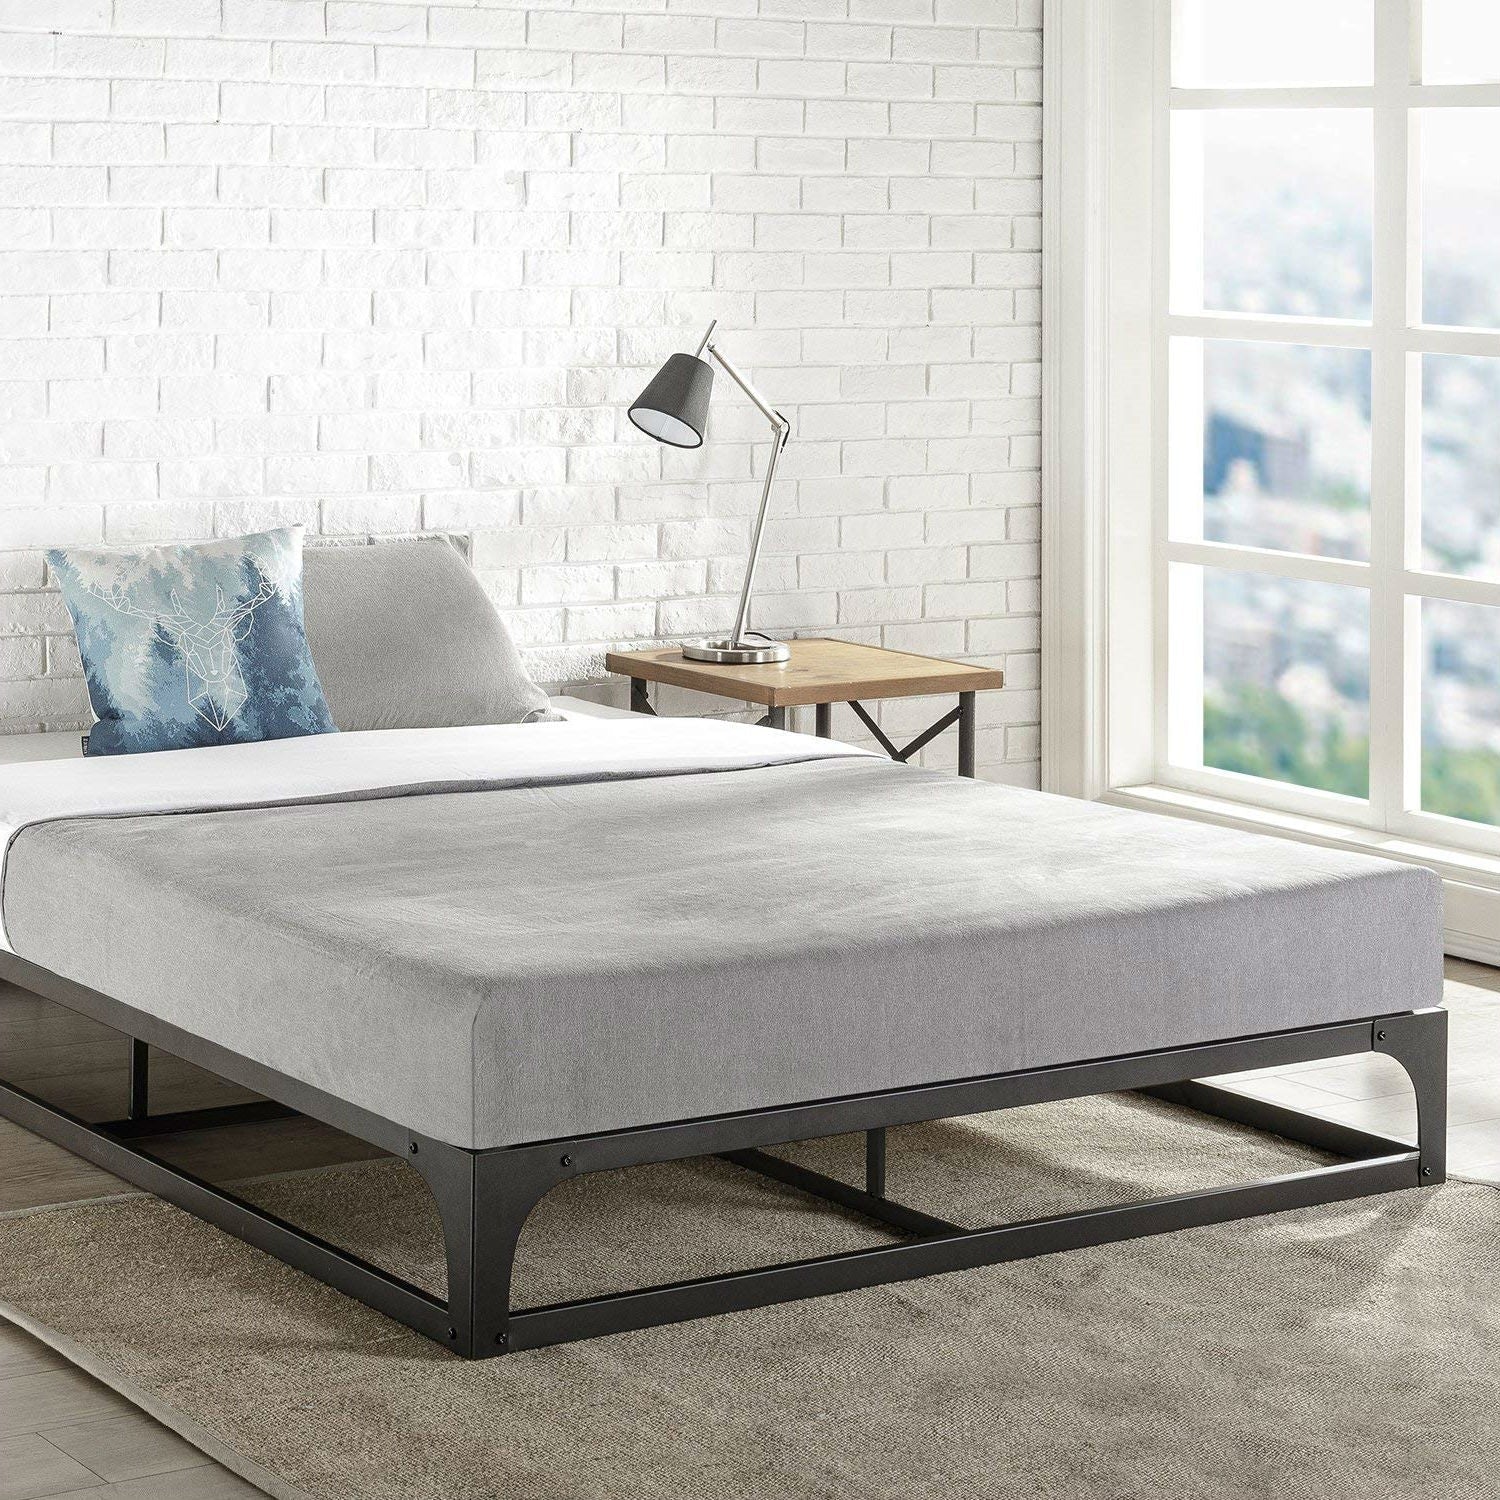 Bedroom > Bed Frames > Platform Beds - Twin Size Modern Low Profile Heavy Duty Metal Platform Bed Frame